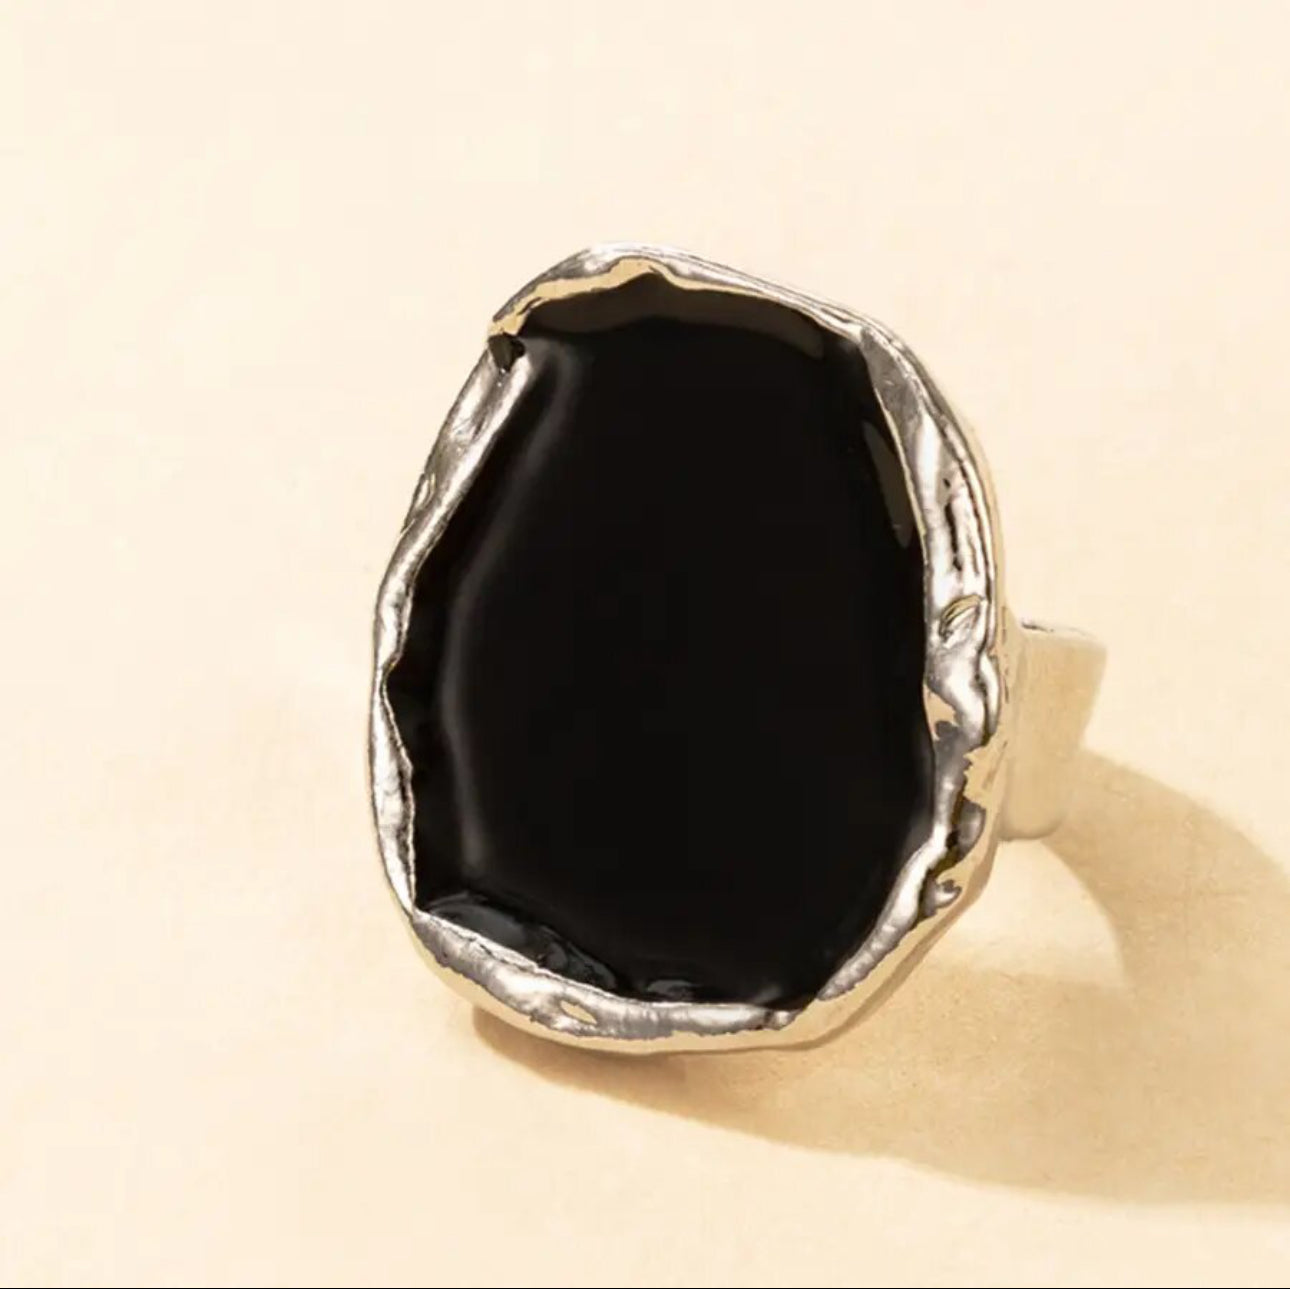 Black Stone Ring for Women